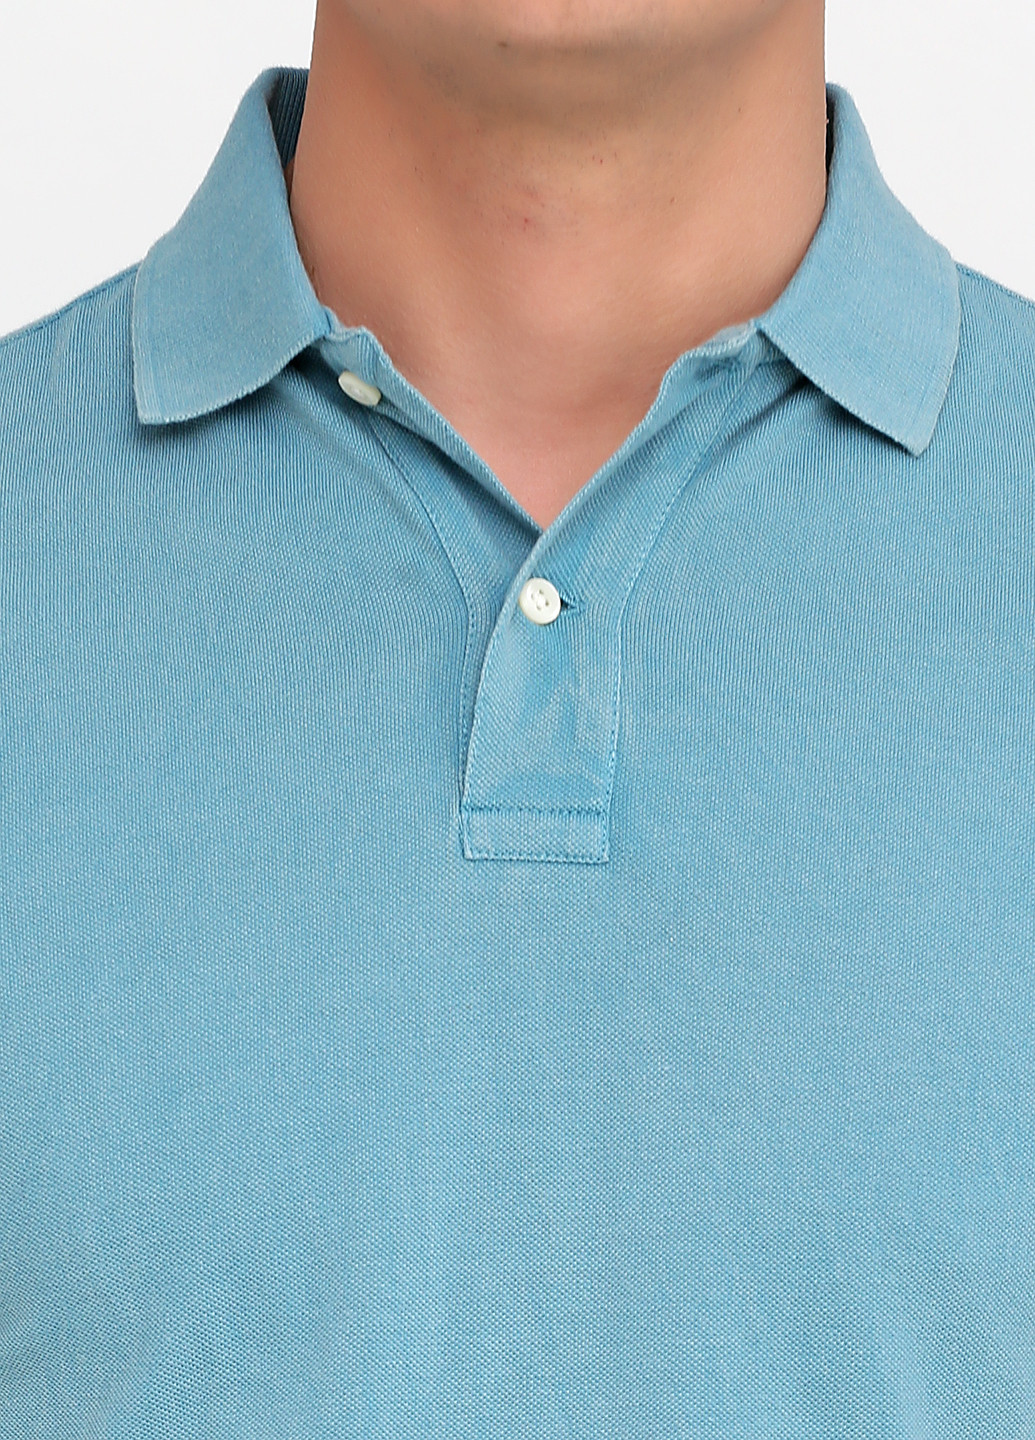 Серо-голубой футболка-поло для мужчин Ralph Lauren однотонная